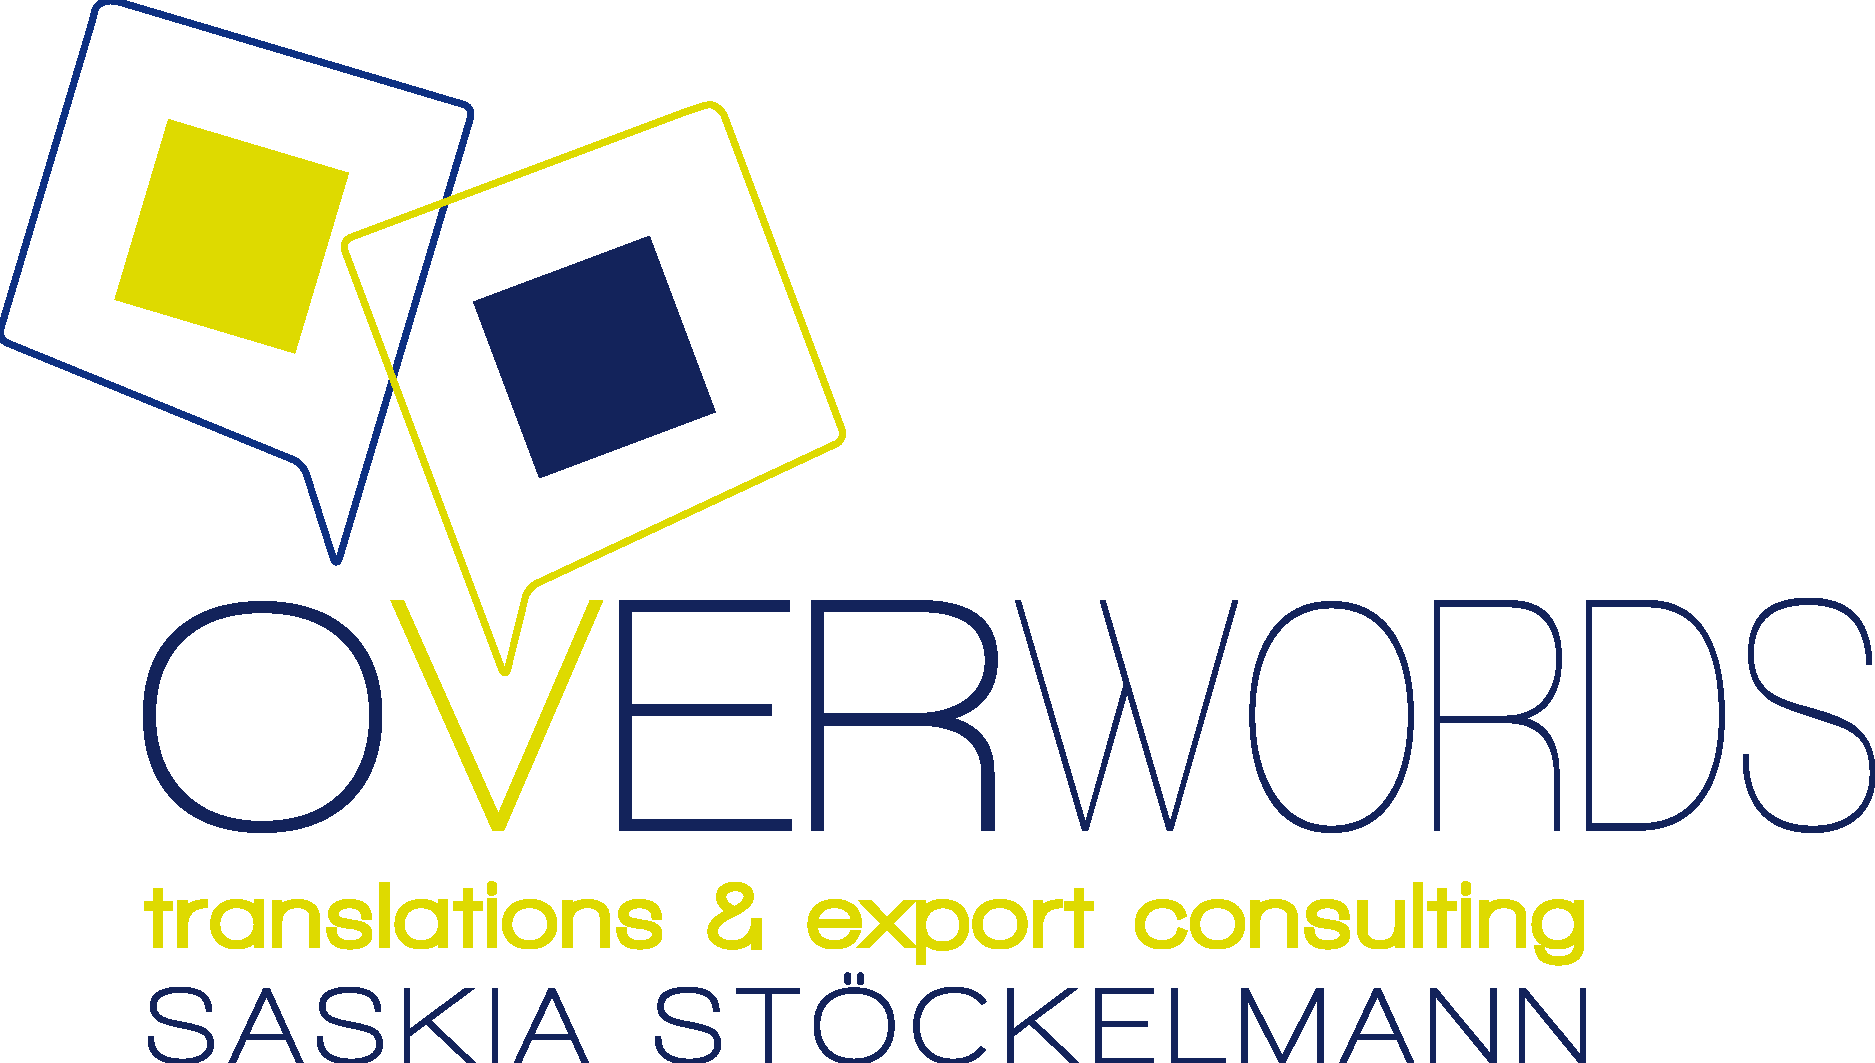 OverWords Logo Vector